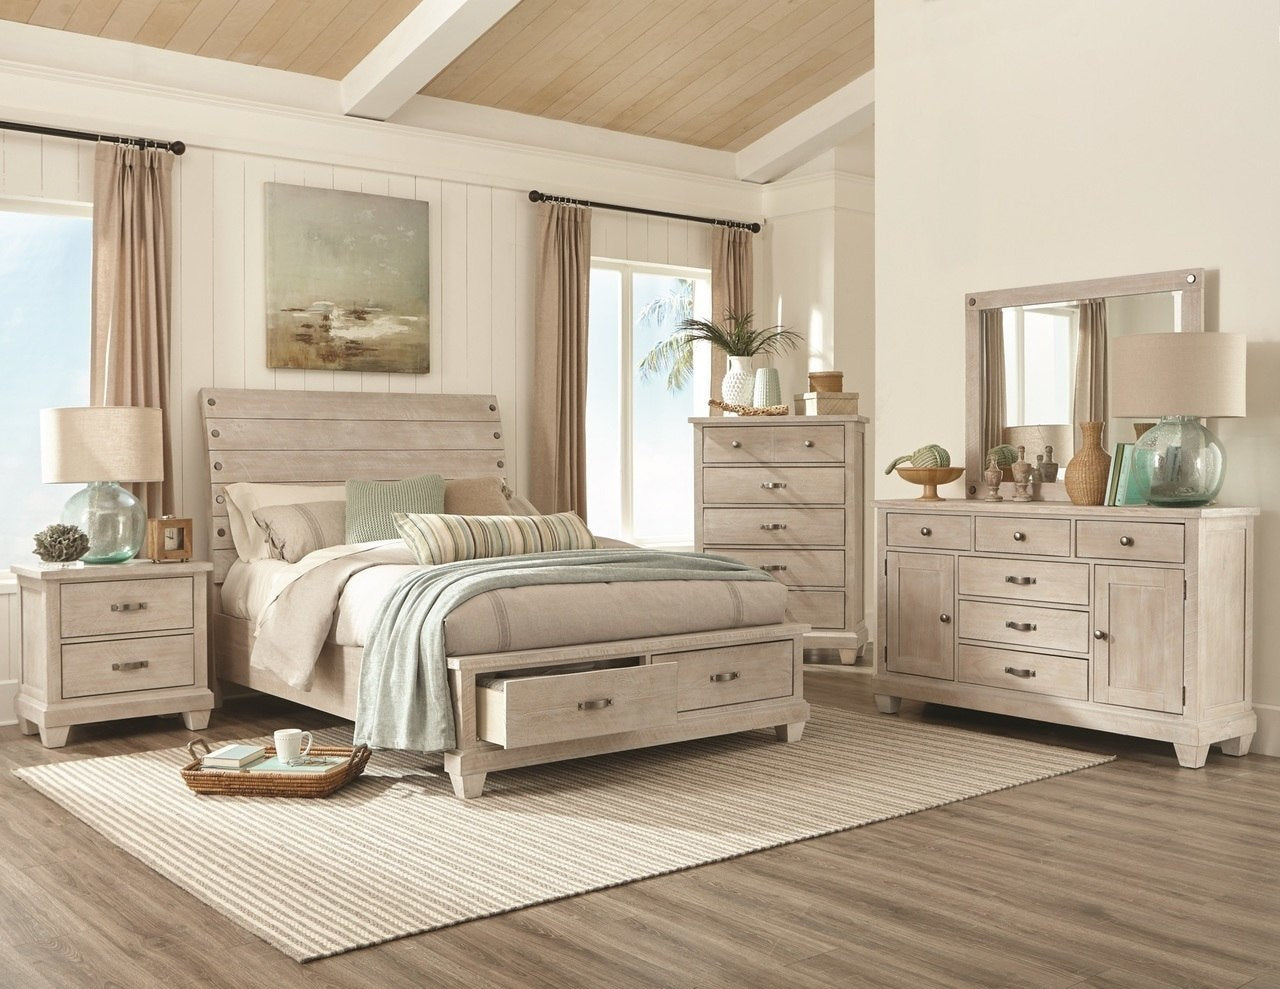 queen bedroom furniture country cottage look